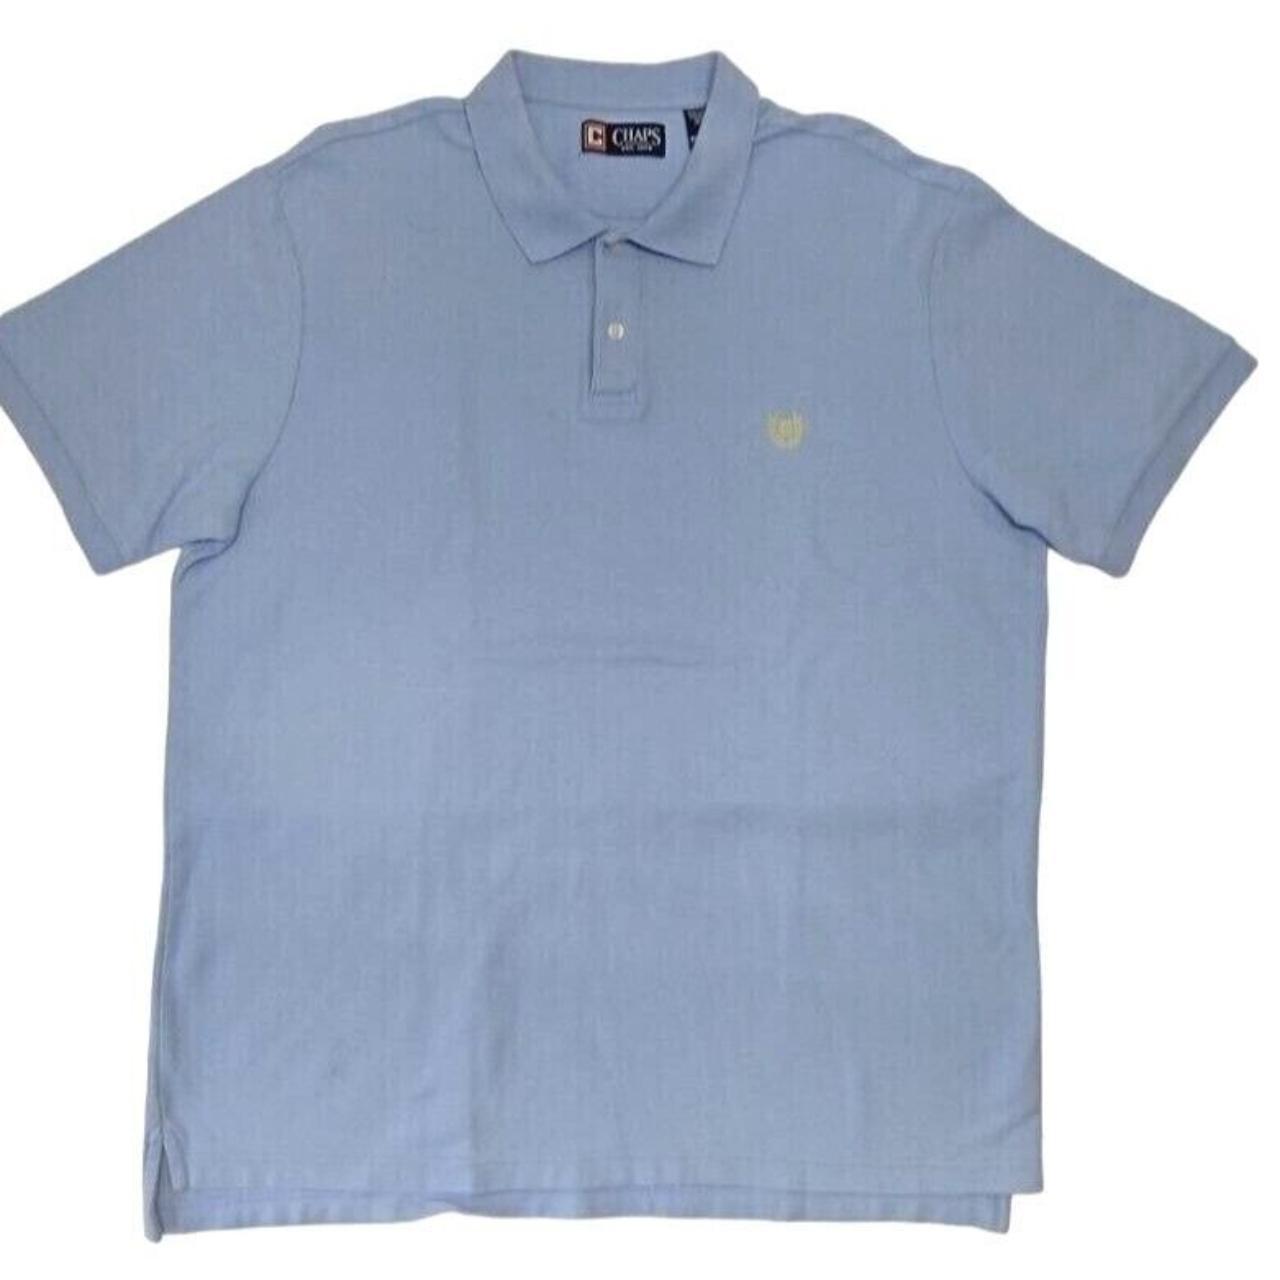 Chap Ralph Lauren Golf Polo Men's Shirt Sky Blue... - Depop